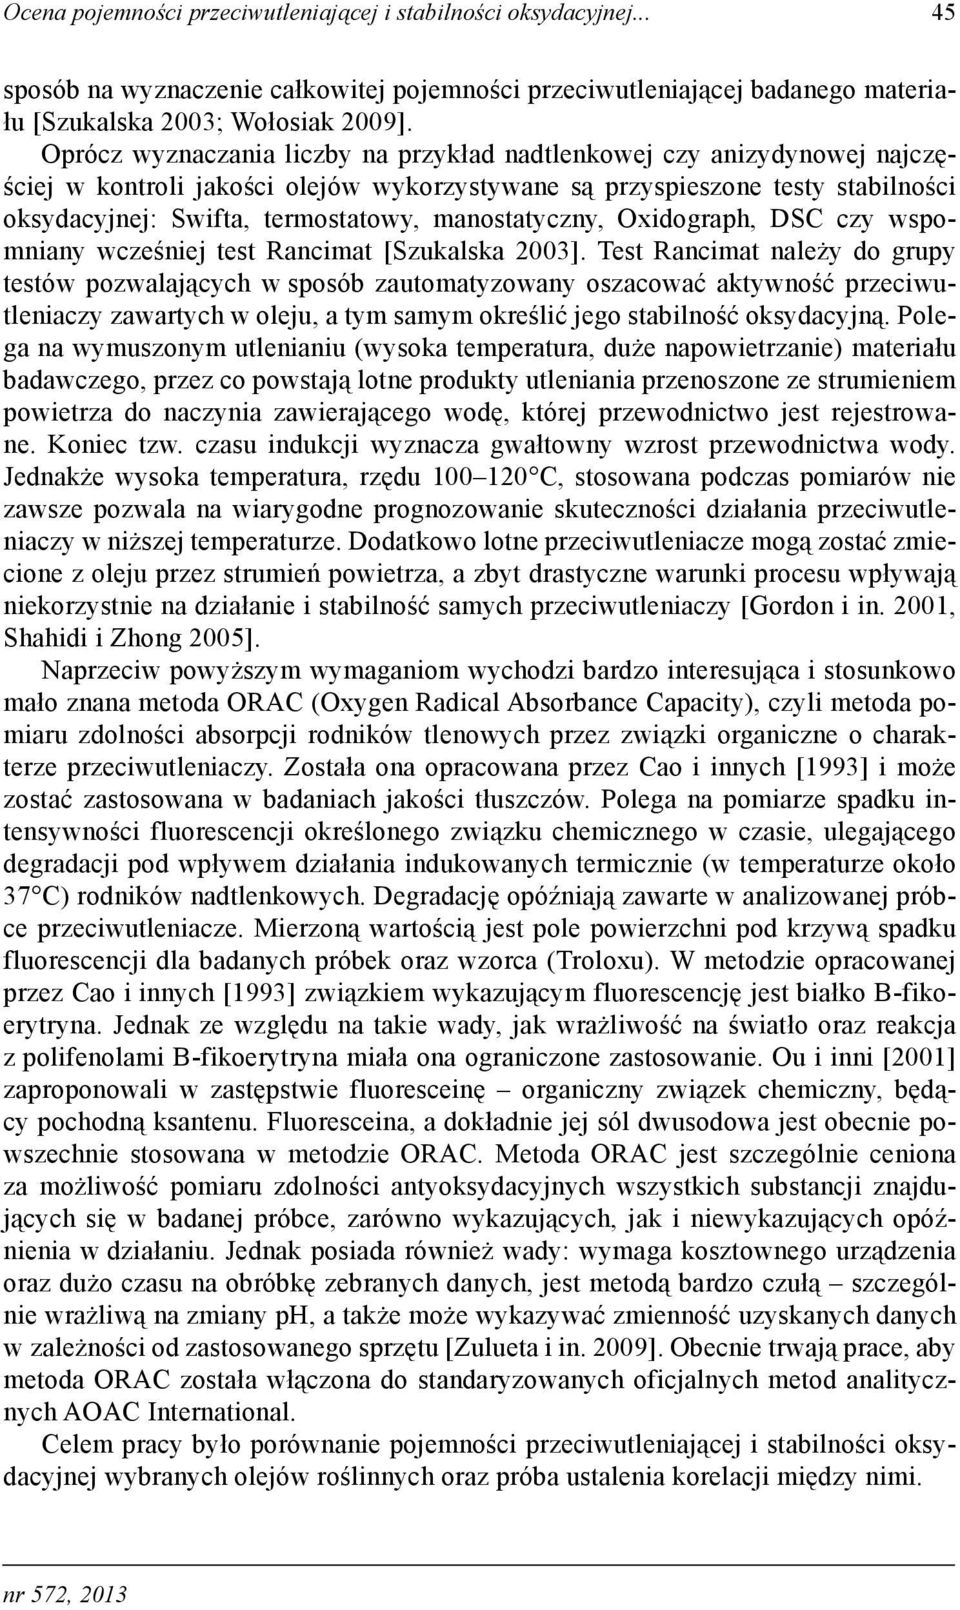 manostatyczny, Oxidograph, DSC czy wspomniany wcześniej test Rancimat [Szukalska 2003].